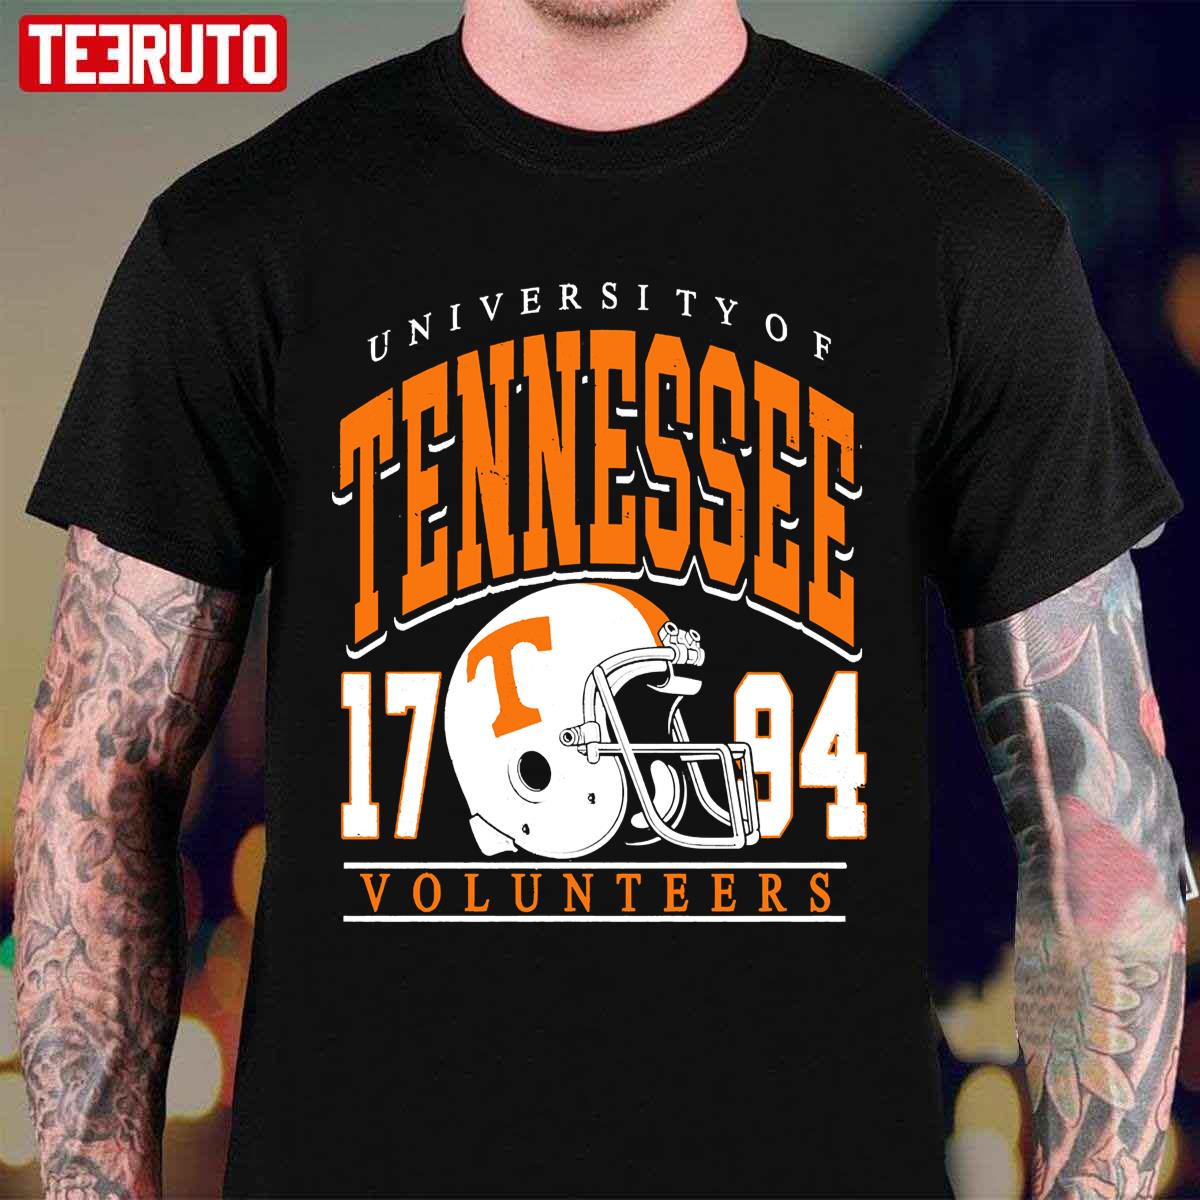 Vintage Tennessee Volunteers Vintage Design Unisex T-Shirt - Teeruto